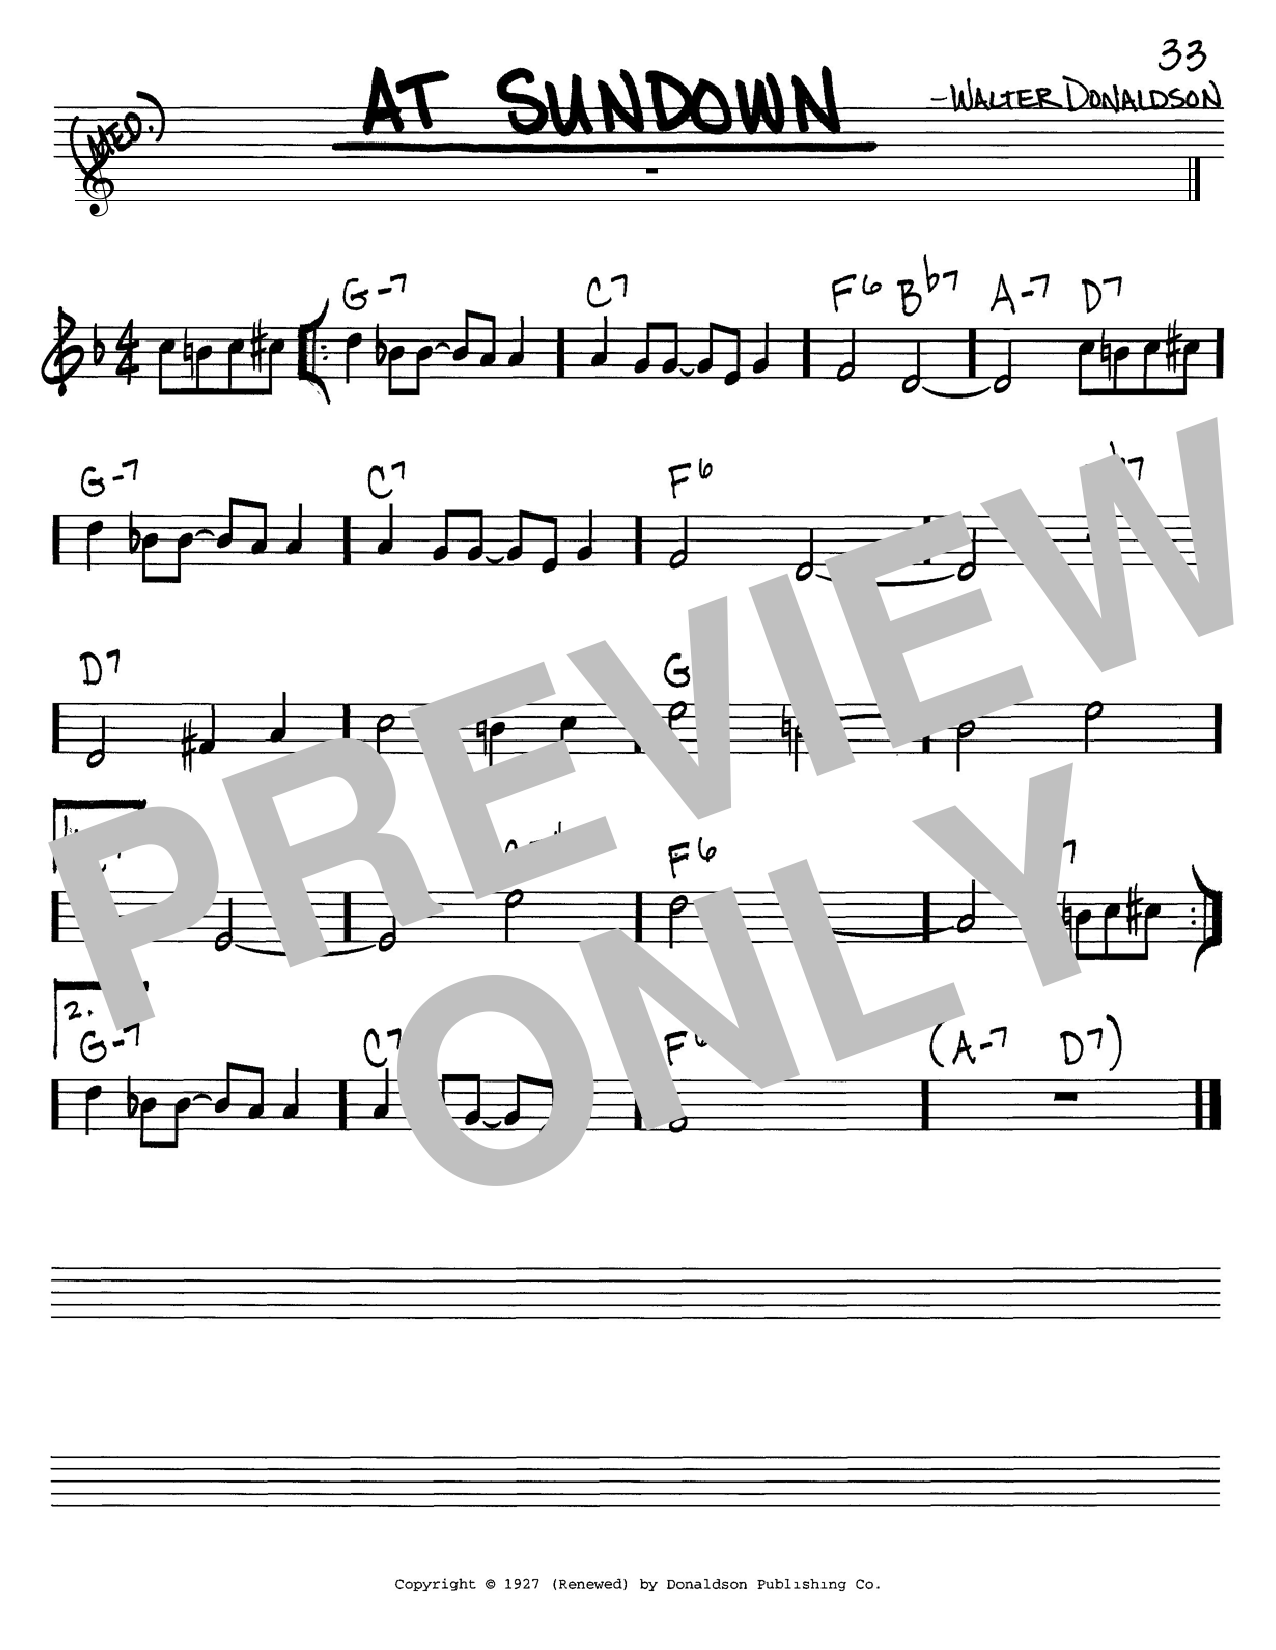 Glenn Miller At Sundown sheet music notes printable PDF score